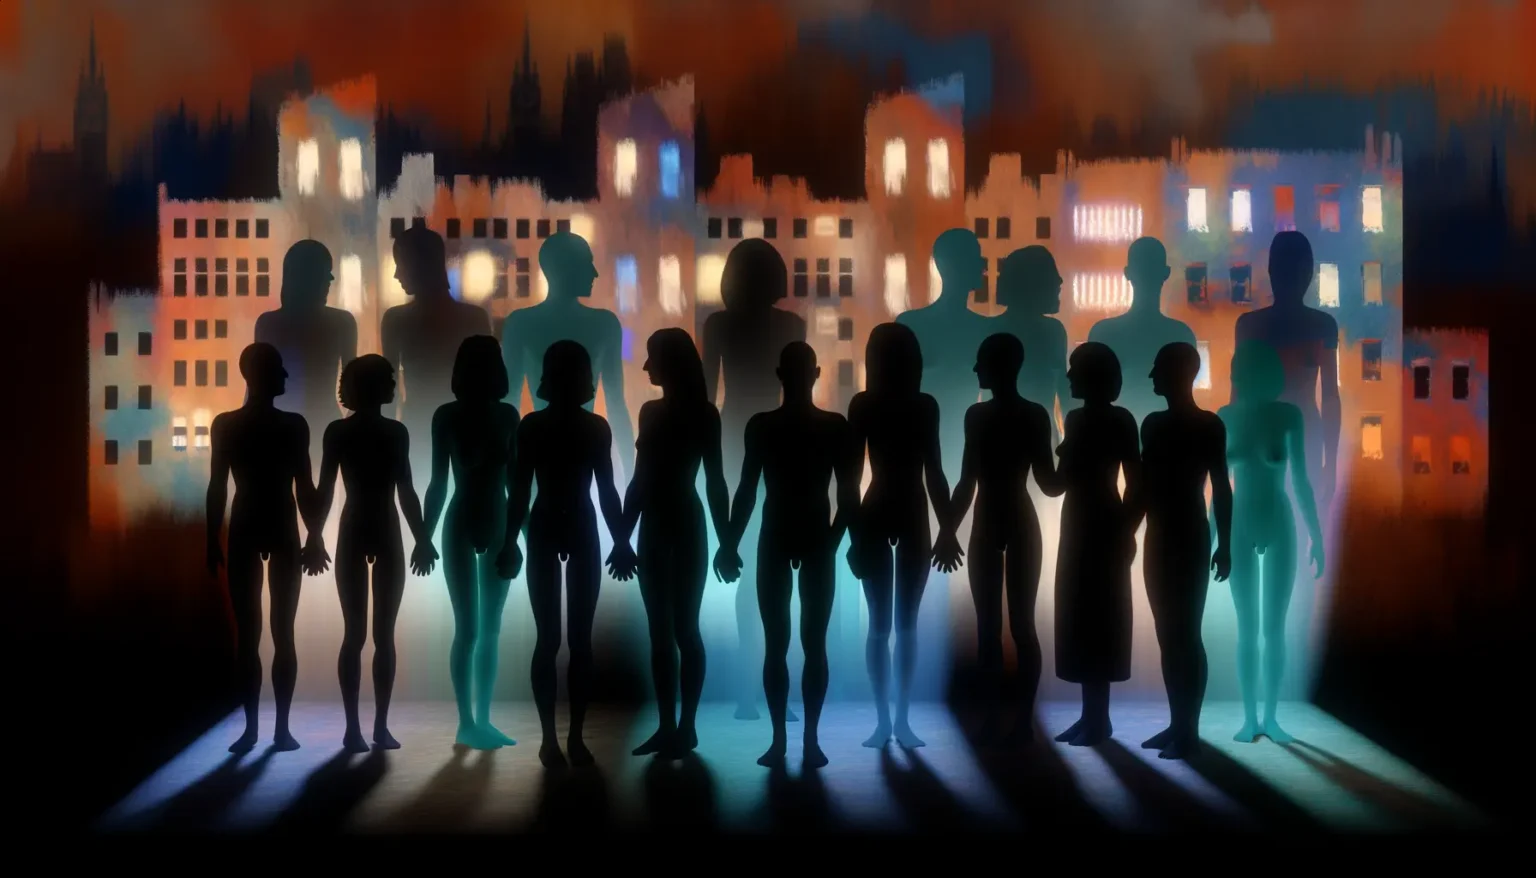 Digitale Kunst eines abstrakten Stadtsilhouettenhintergrunds bei Nacht mit differenziell beleuchteten, farbigen Silhouetten von menschenähnlichen Figuren im Vordergrund.